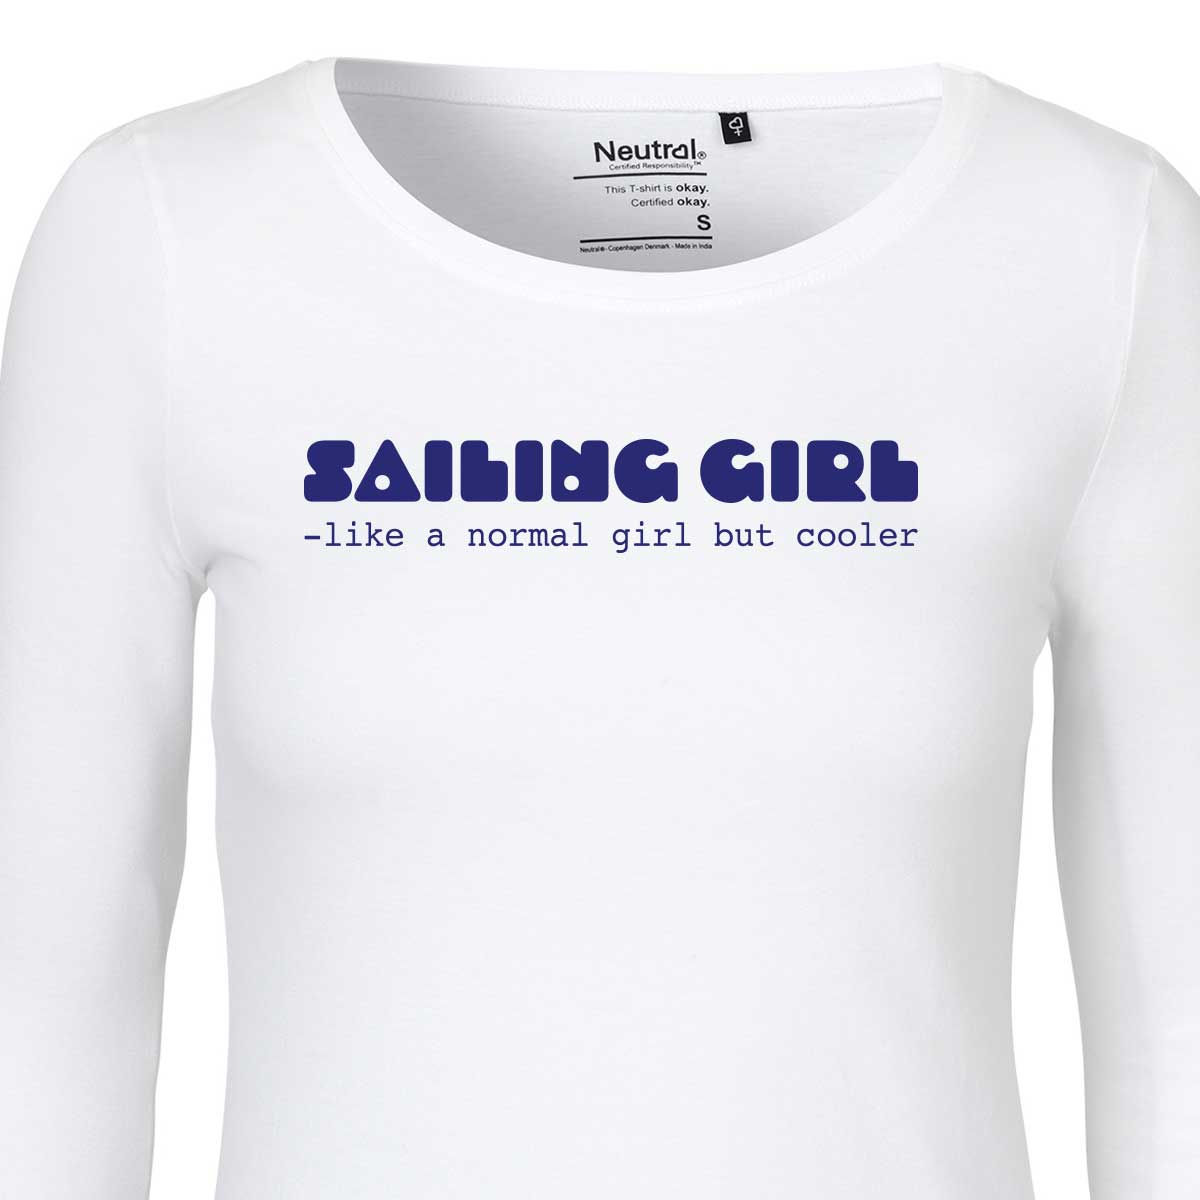 Langermet hvit t-skjorte, Sailing girl